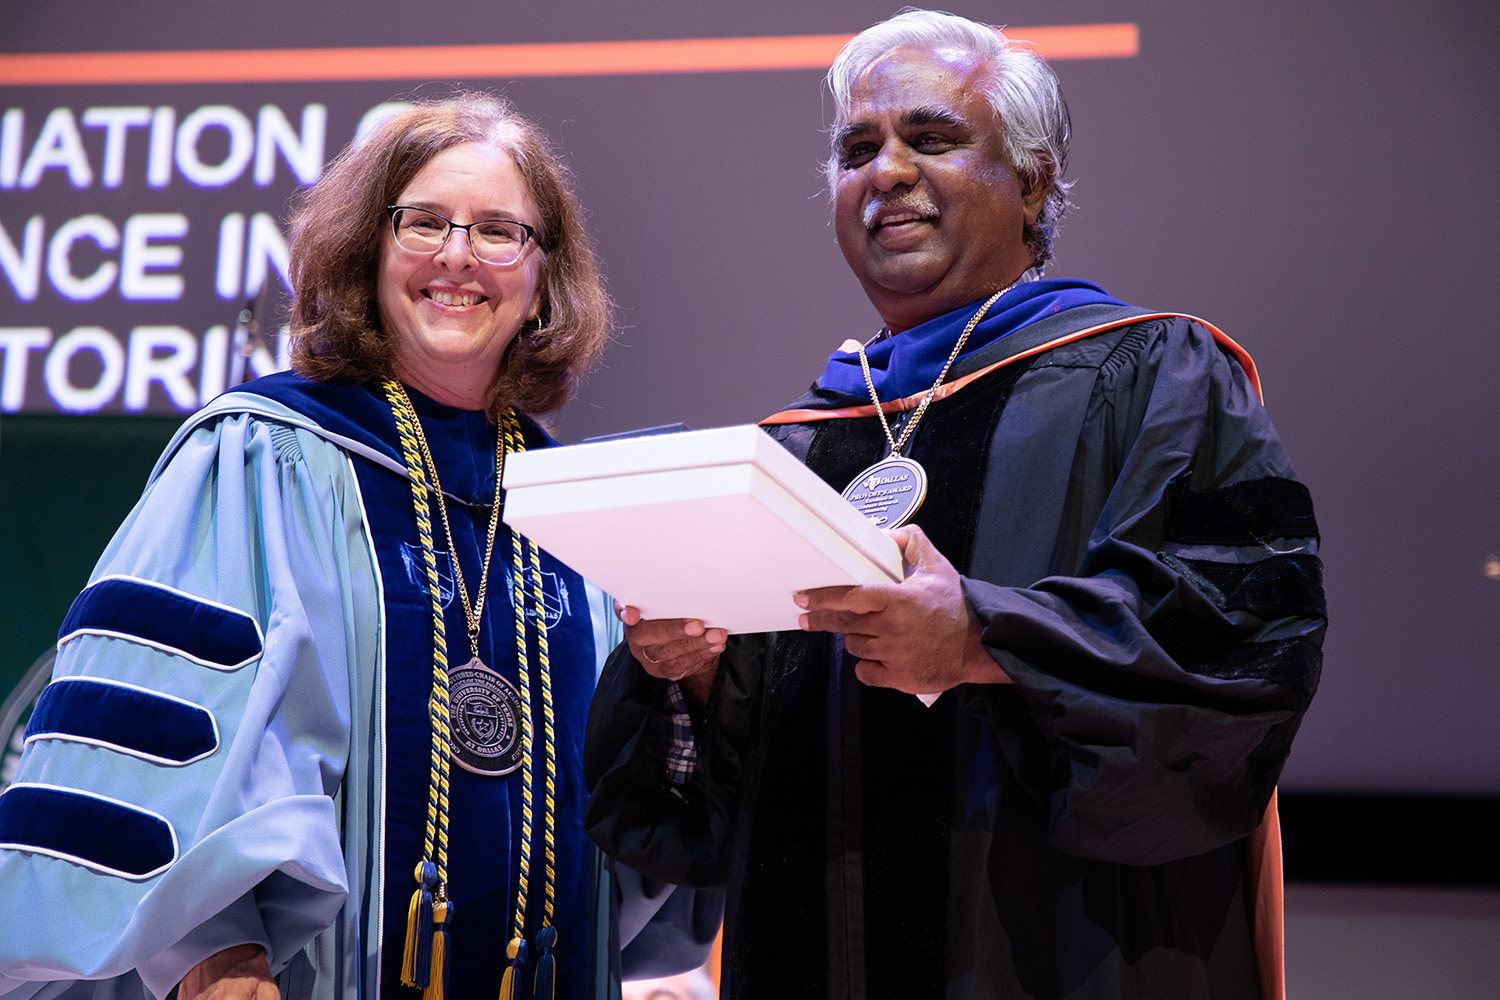 UTD Honors Year’s Top Research Mentors, Advisor, Graduate Work